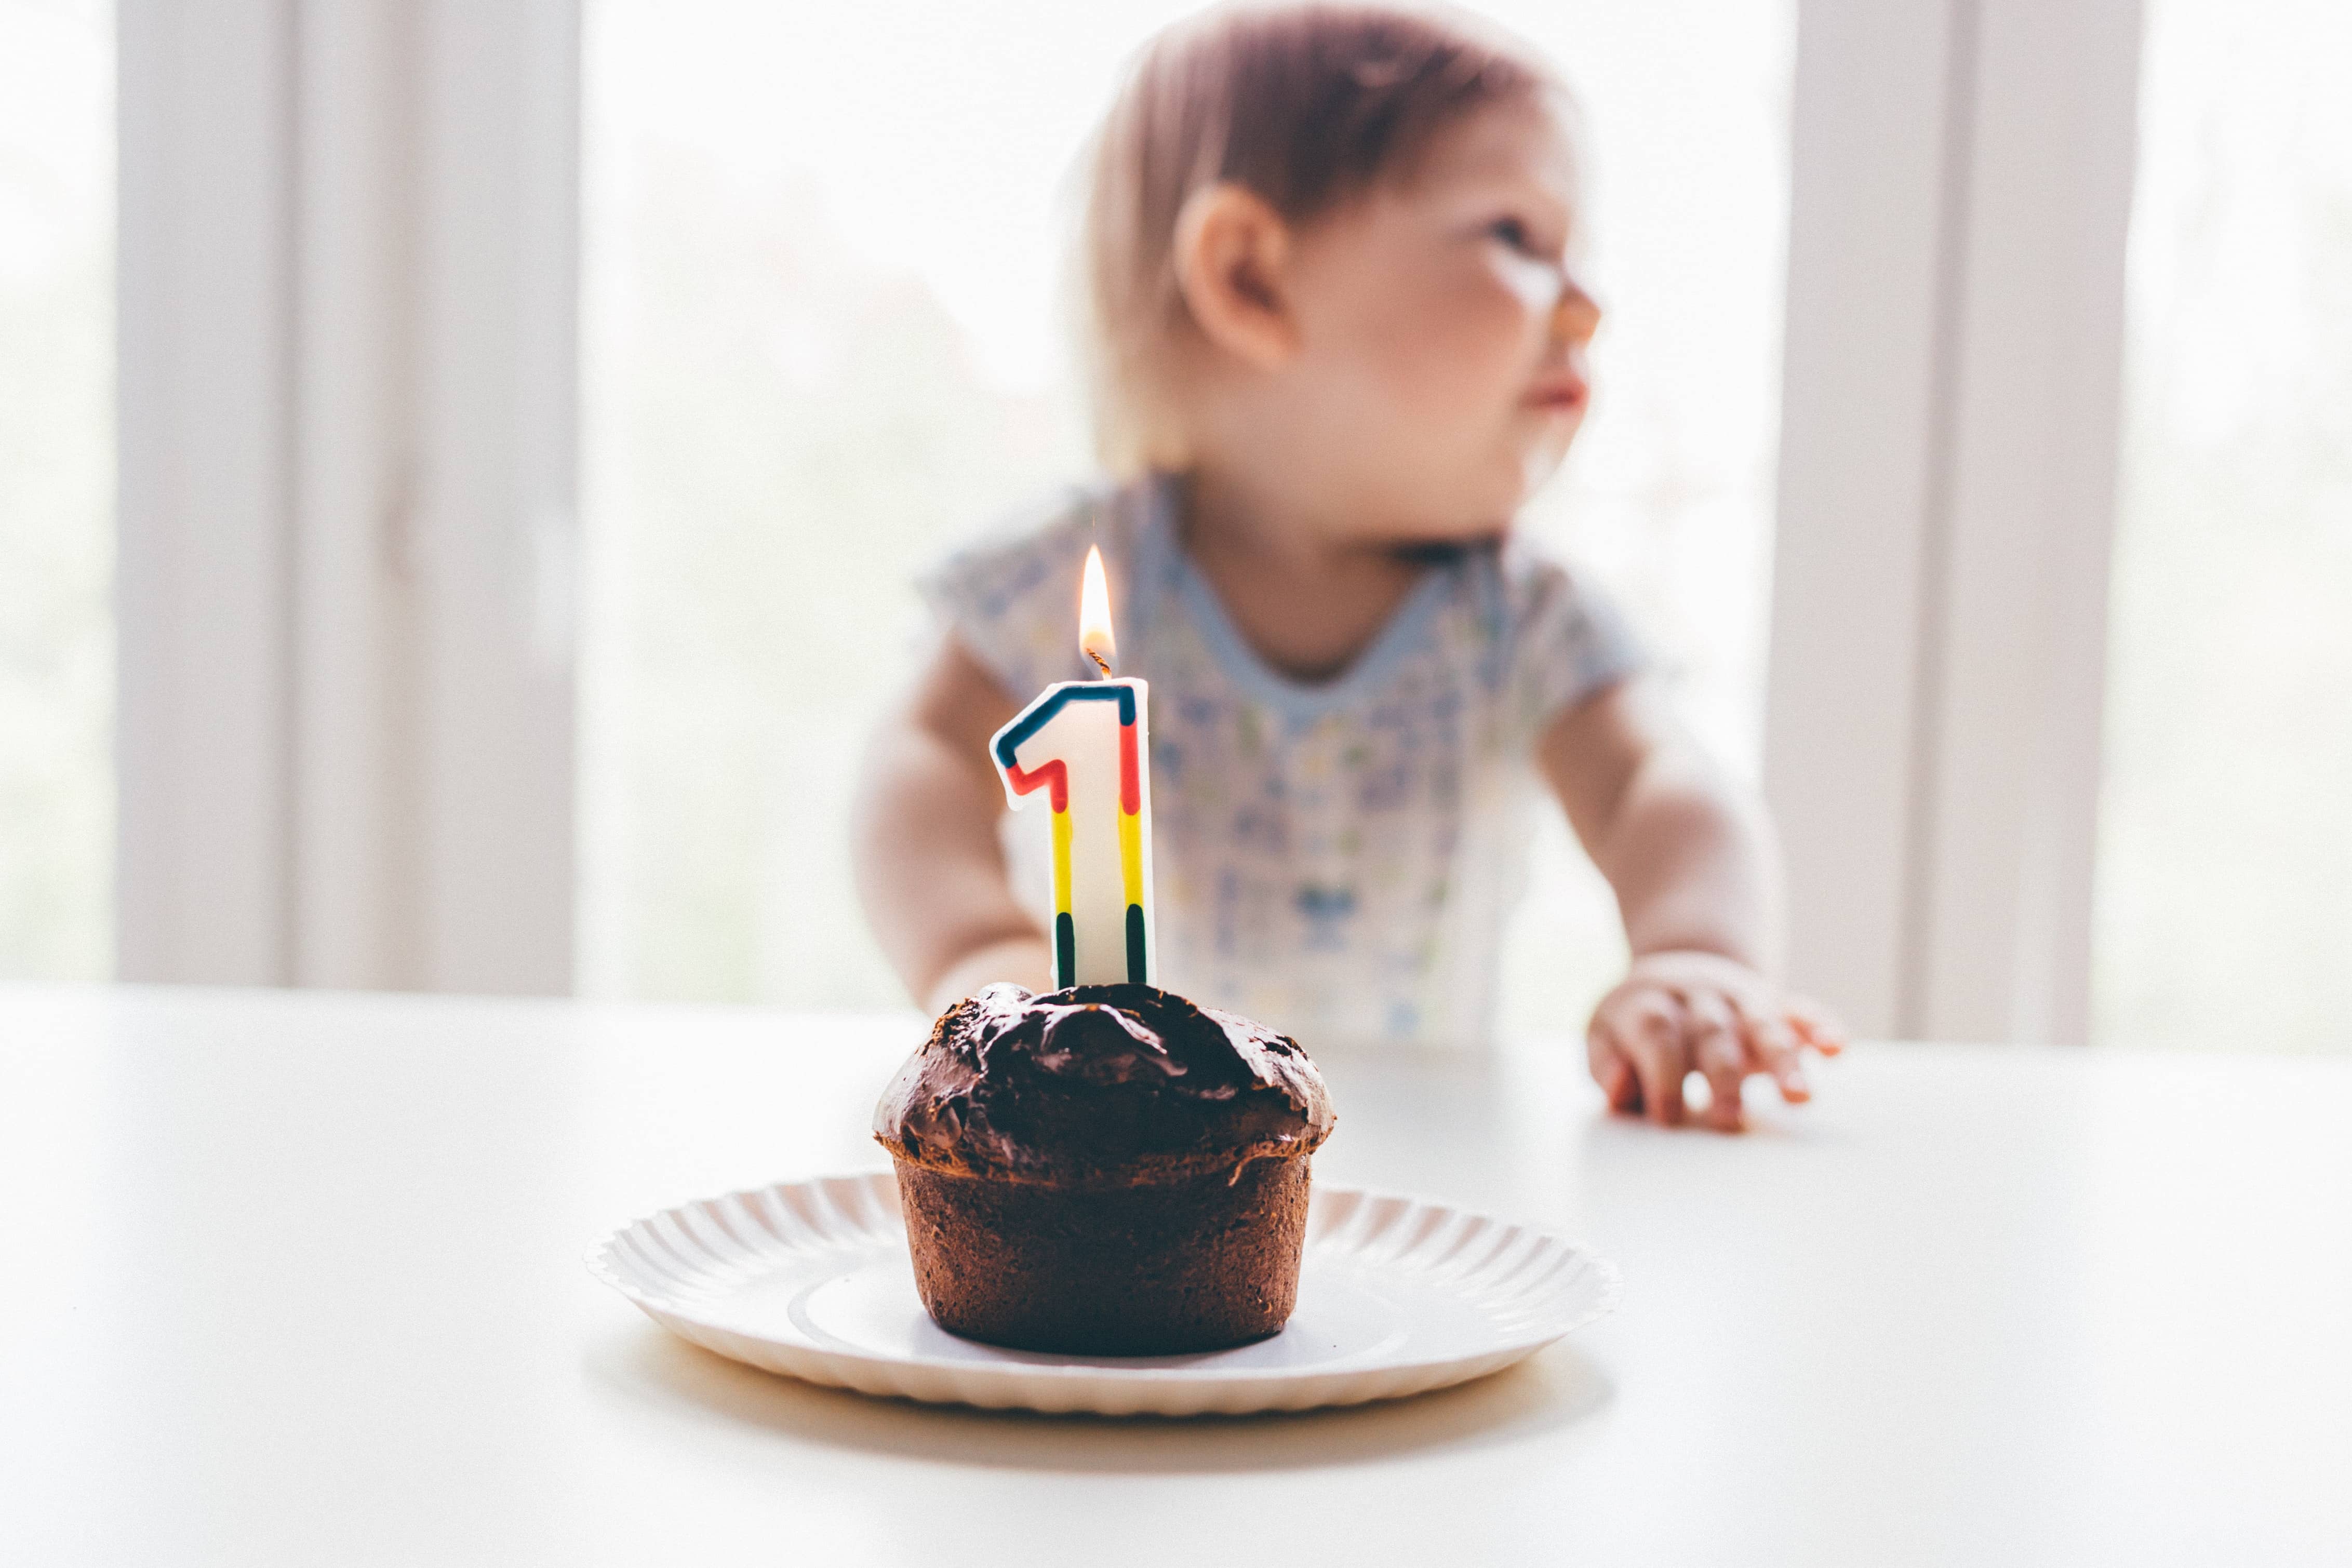 Comment fêter l'anniversaire des 1 an de bébé , thème, cadeau, photo !